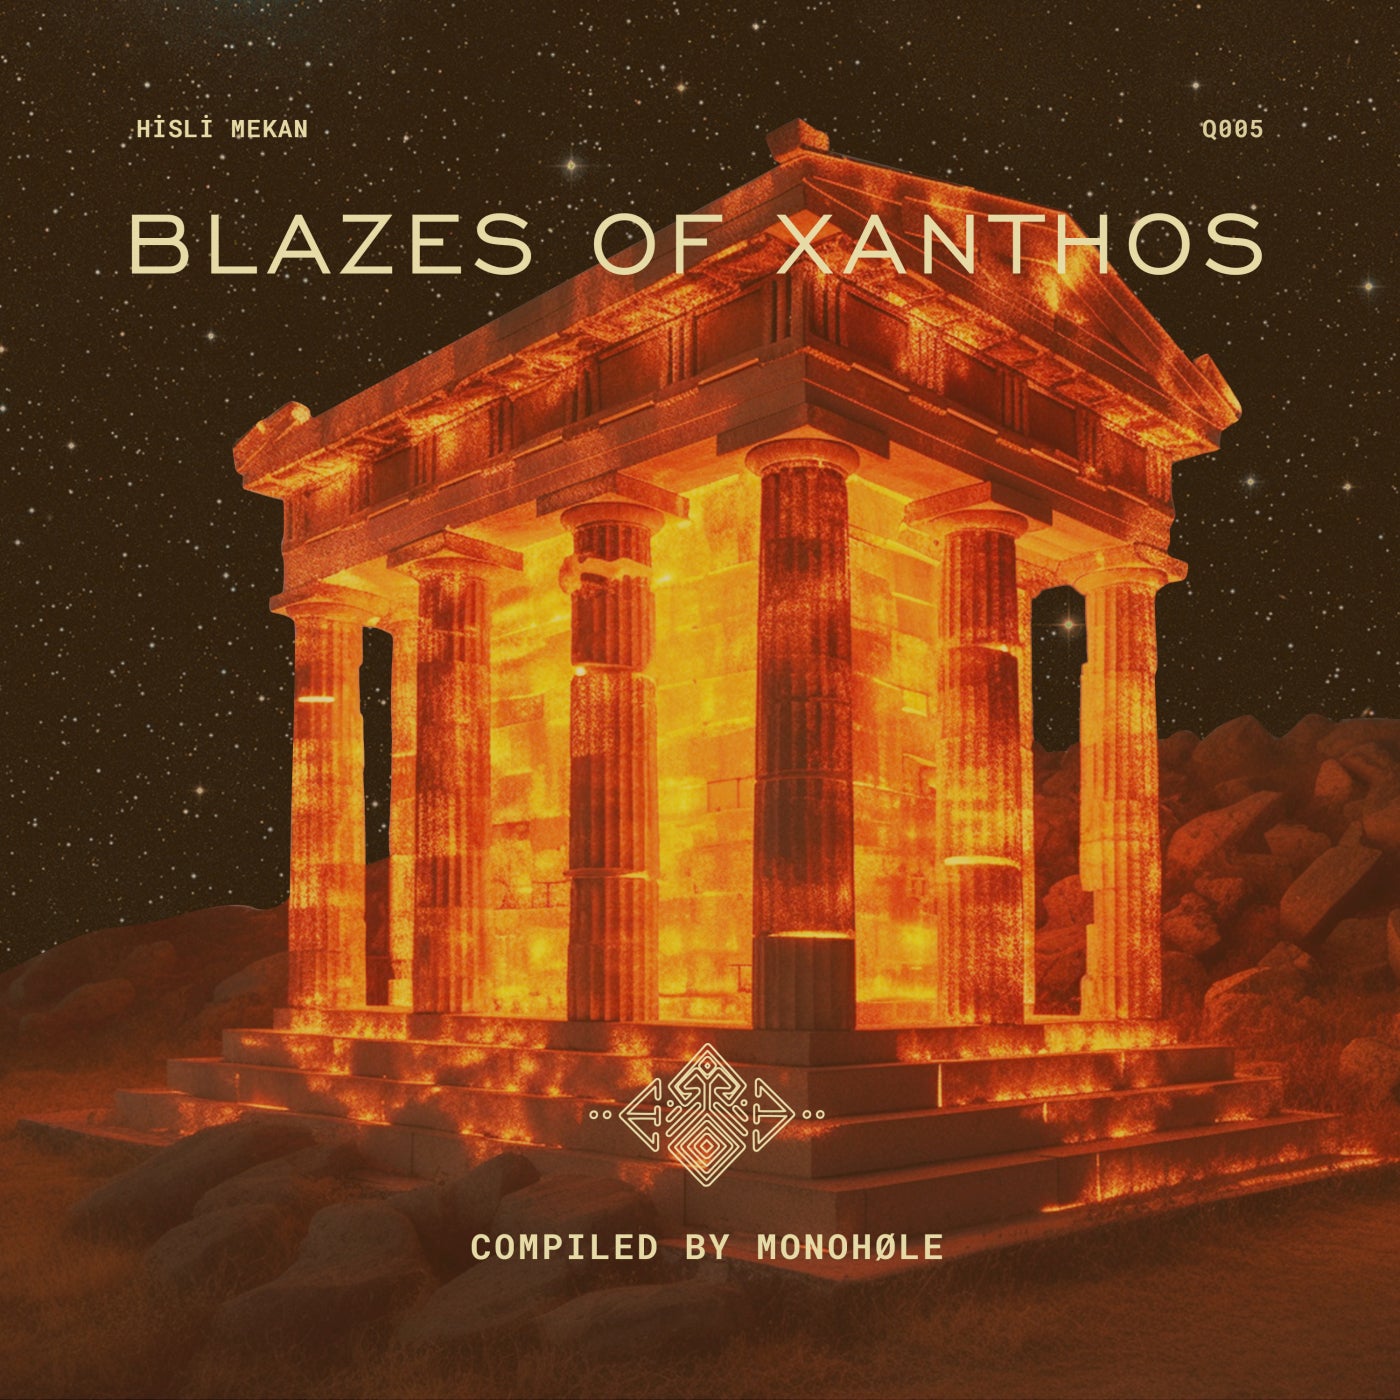 Blazes of Xanthos